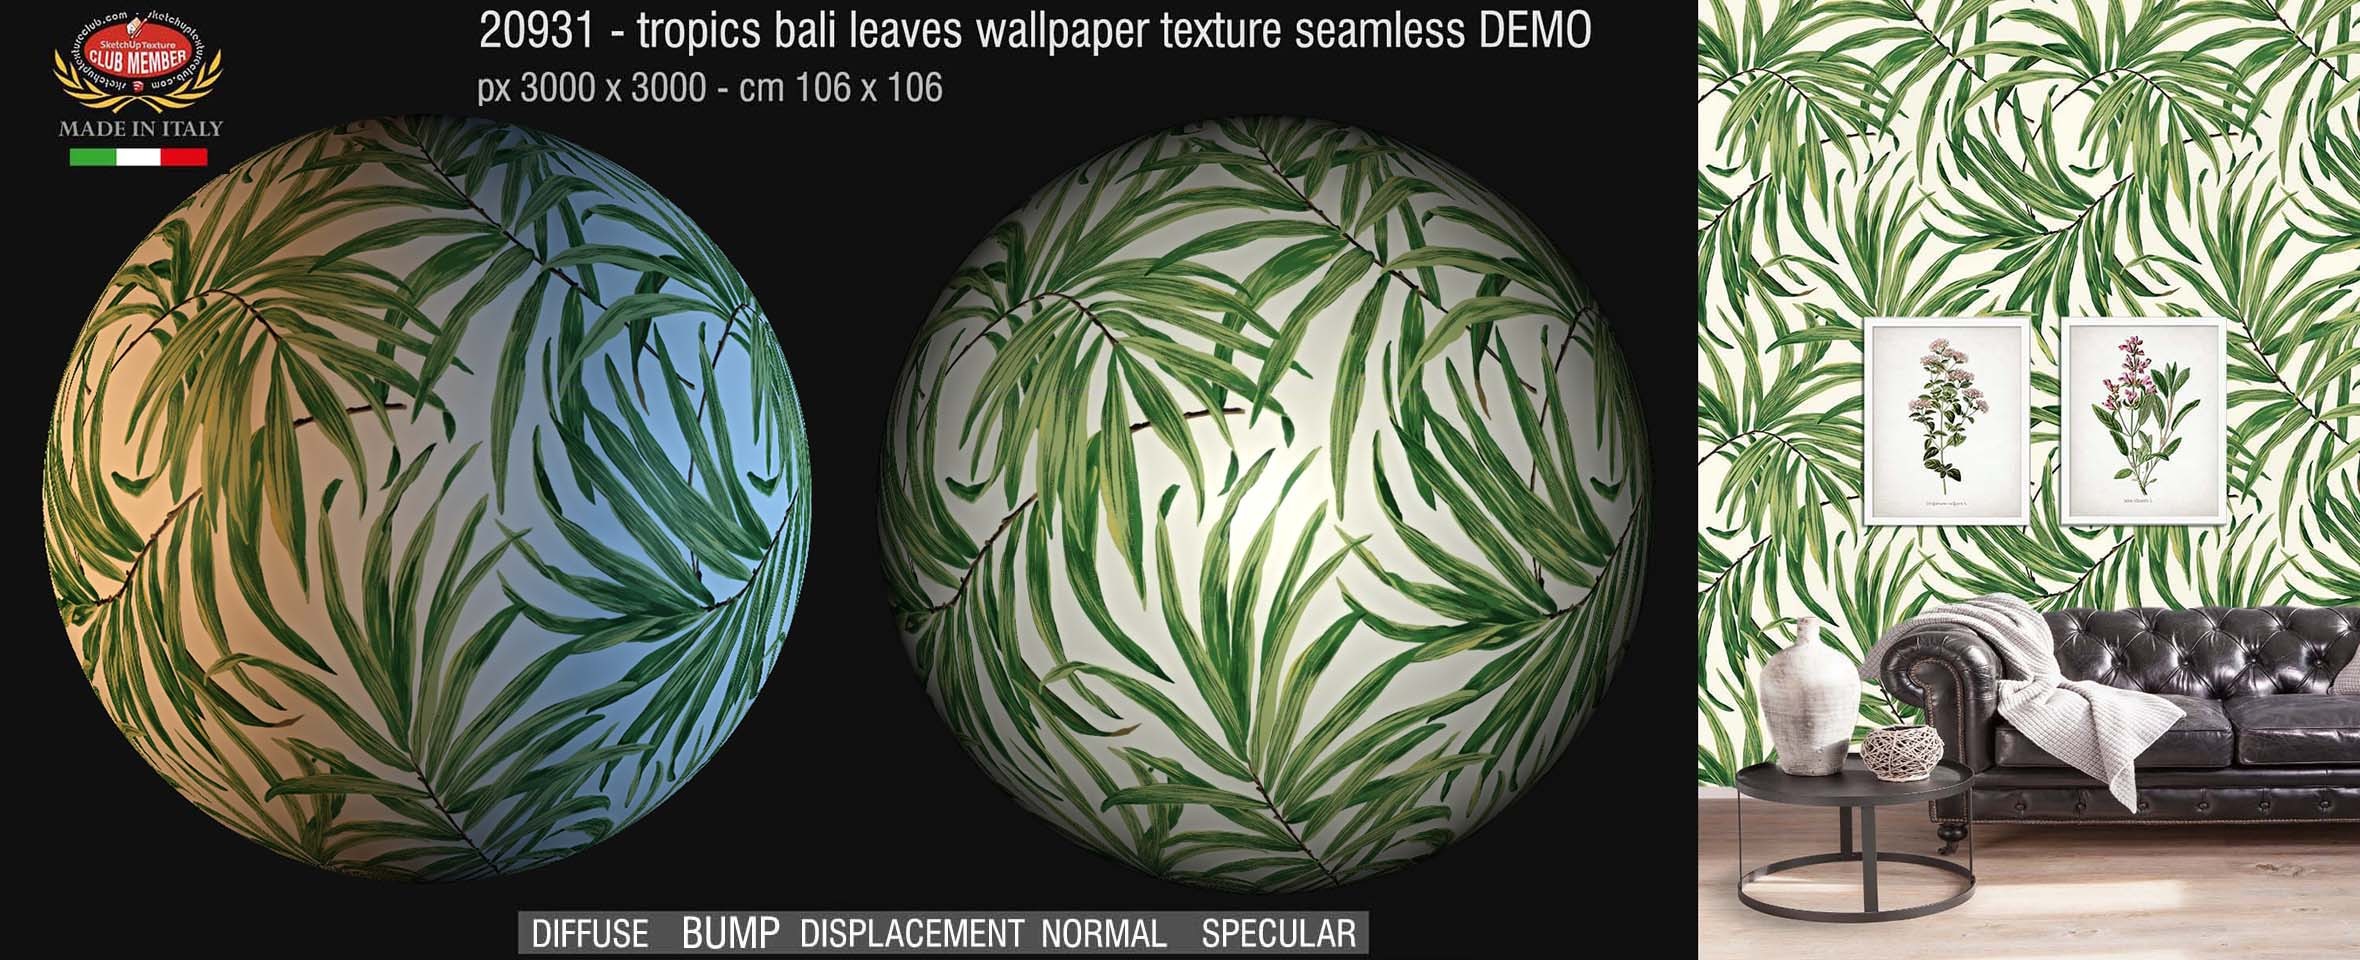 20931 Tropics bali leaves wallpaper PBR texture DEMO